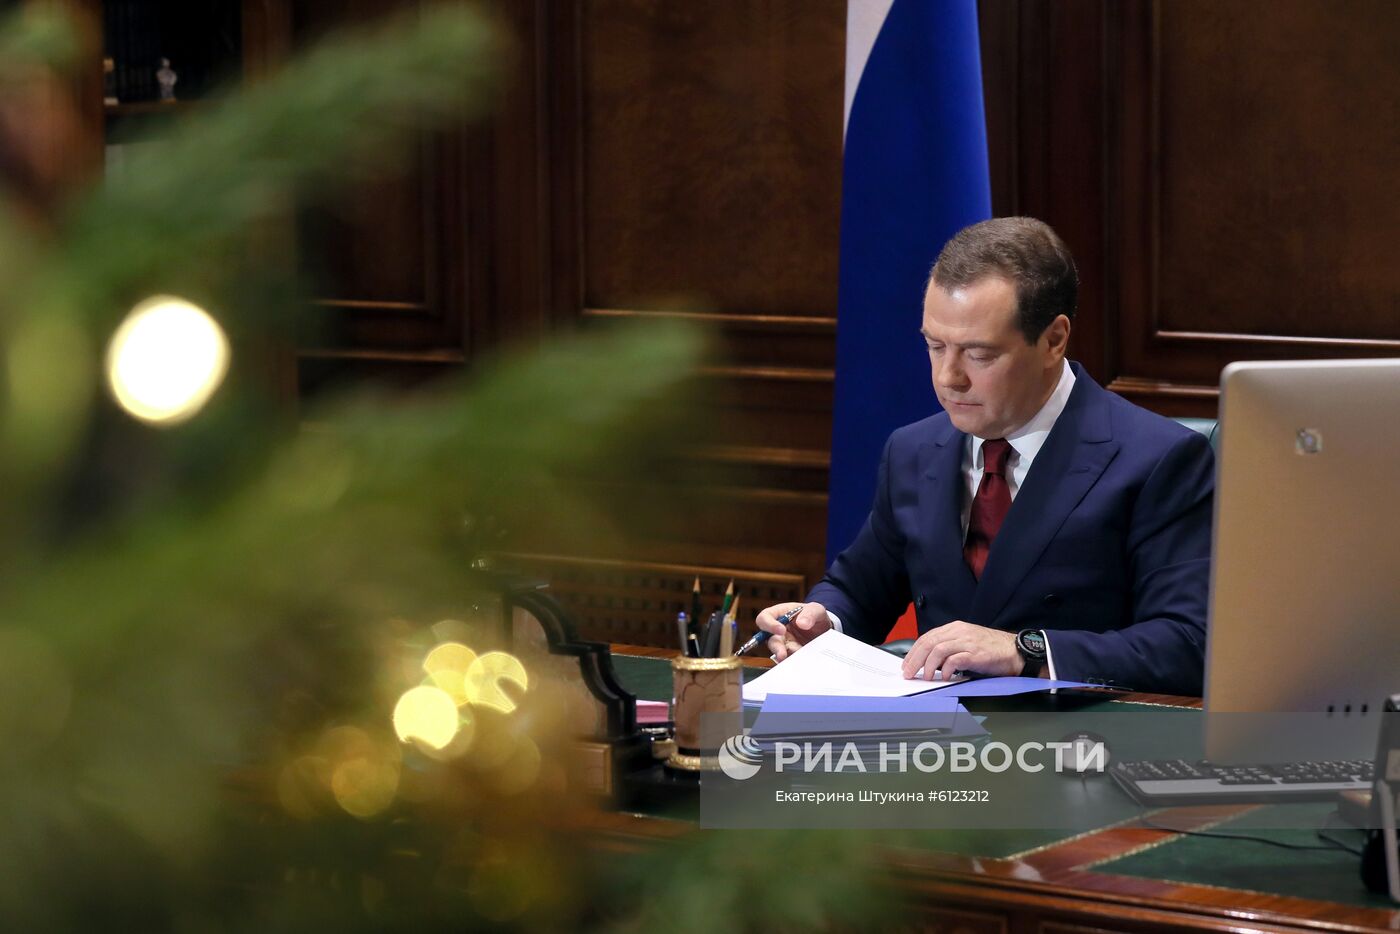 Поздравление премьер-министра РФ Д. Медведева с Новым годом